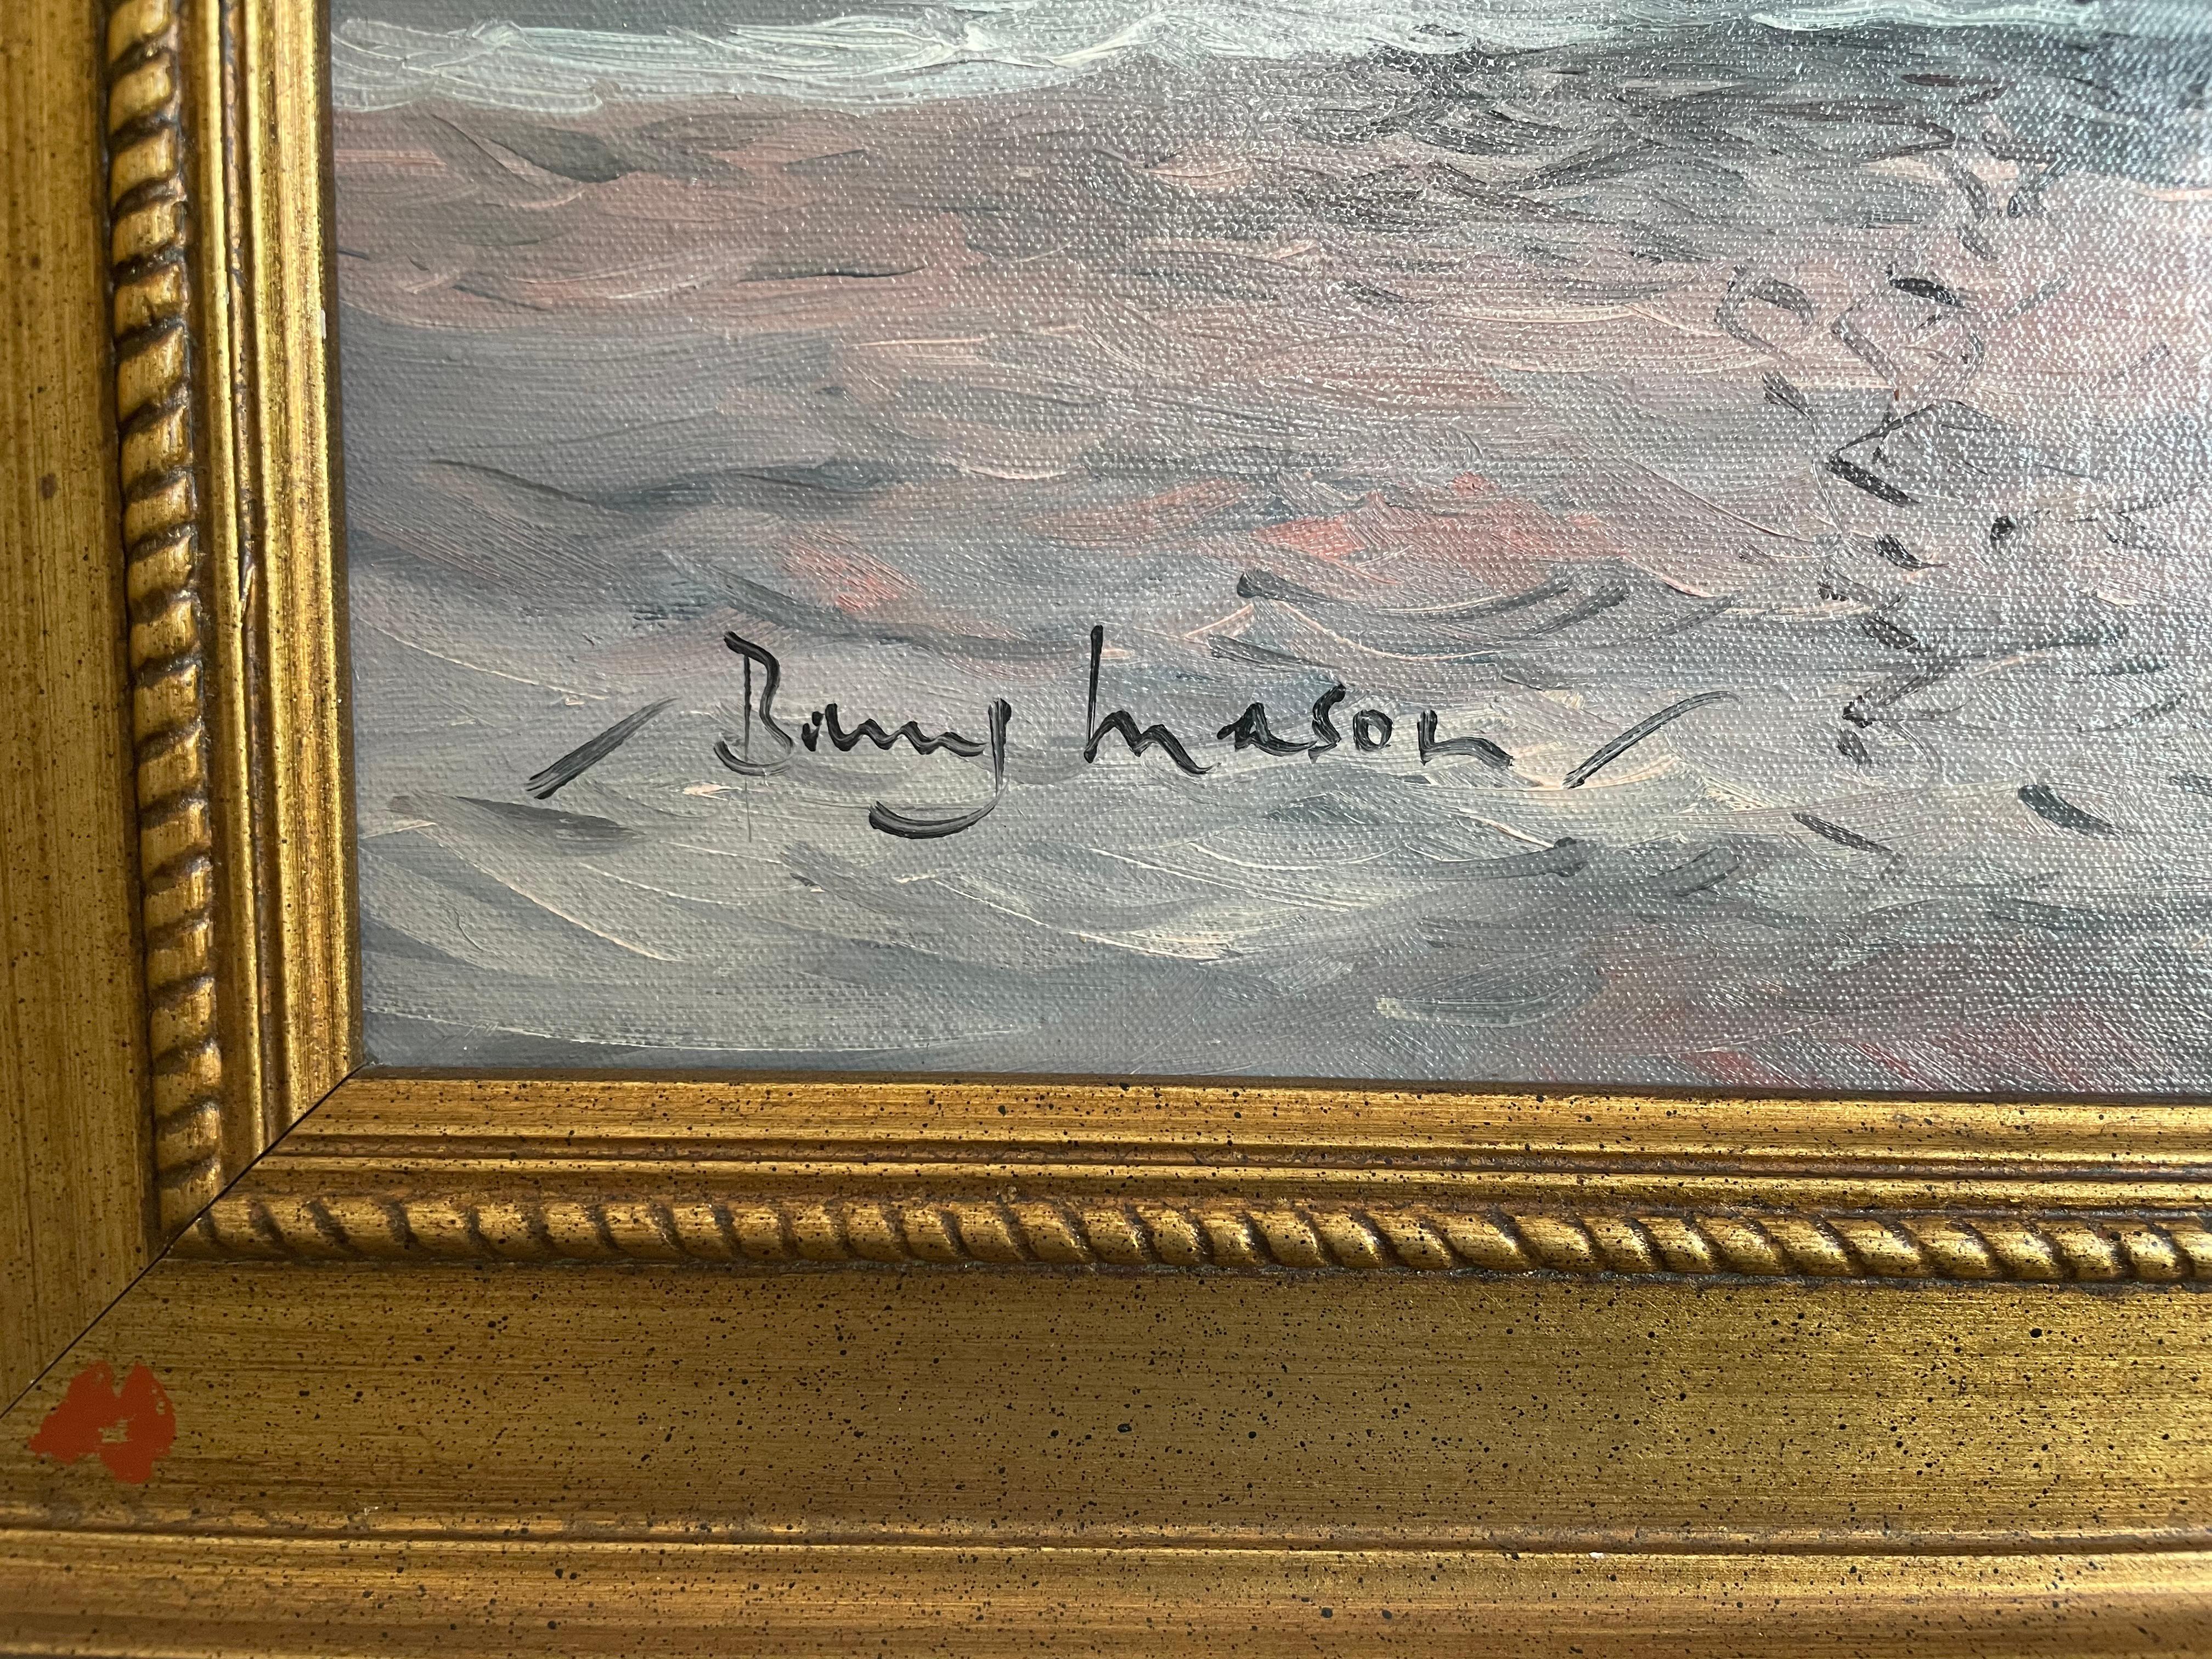 Barry Mason, anglais, Scène de navigation, huile sur panneau d'artiste, signée en bas à gauche.

Barry Marin (britannique, né en 1947) est l'un des artistes marins les plus accomplis travaillant aujourd'hui en Grande-Bretagne.

Né à Seaton dans le